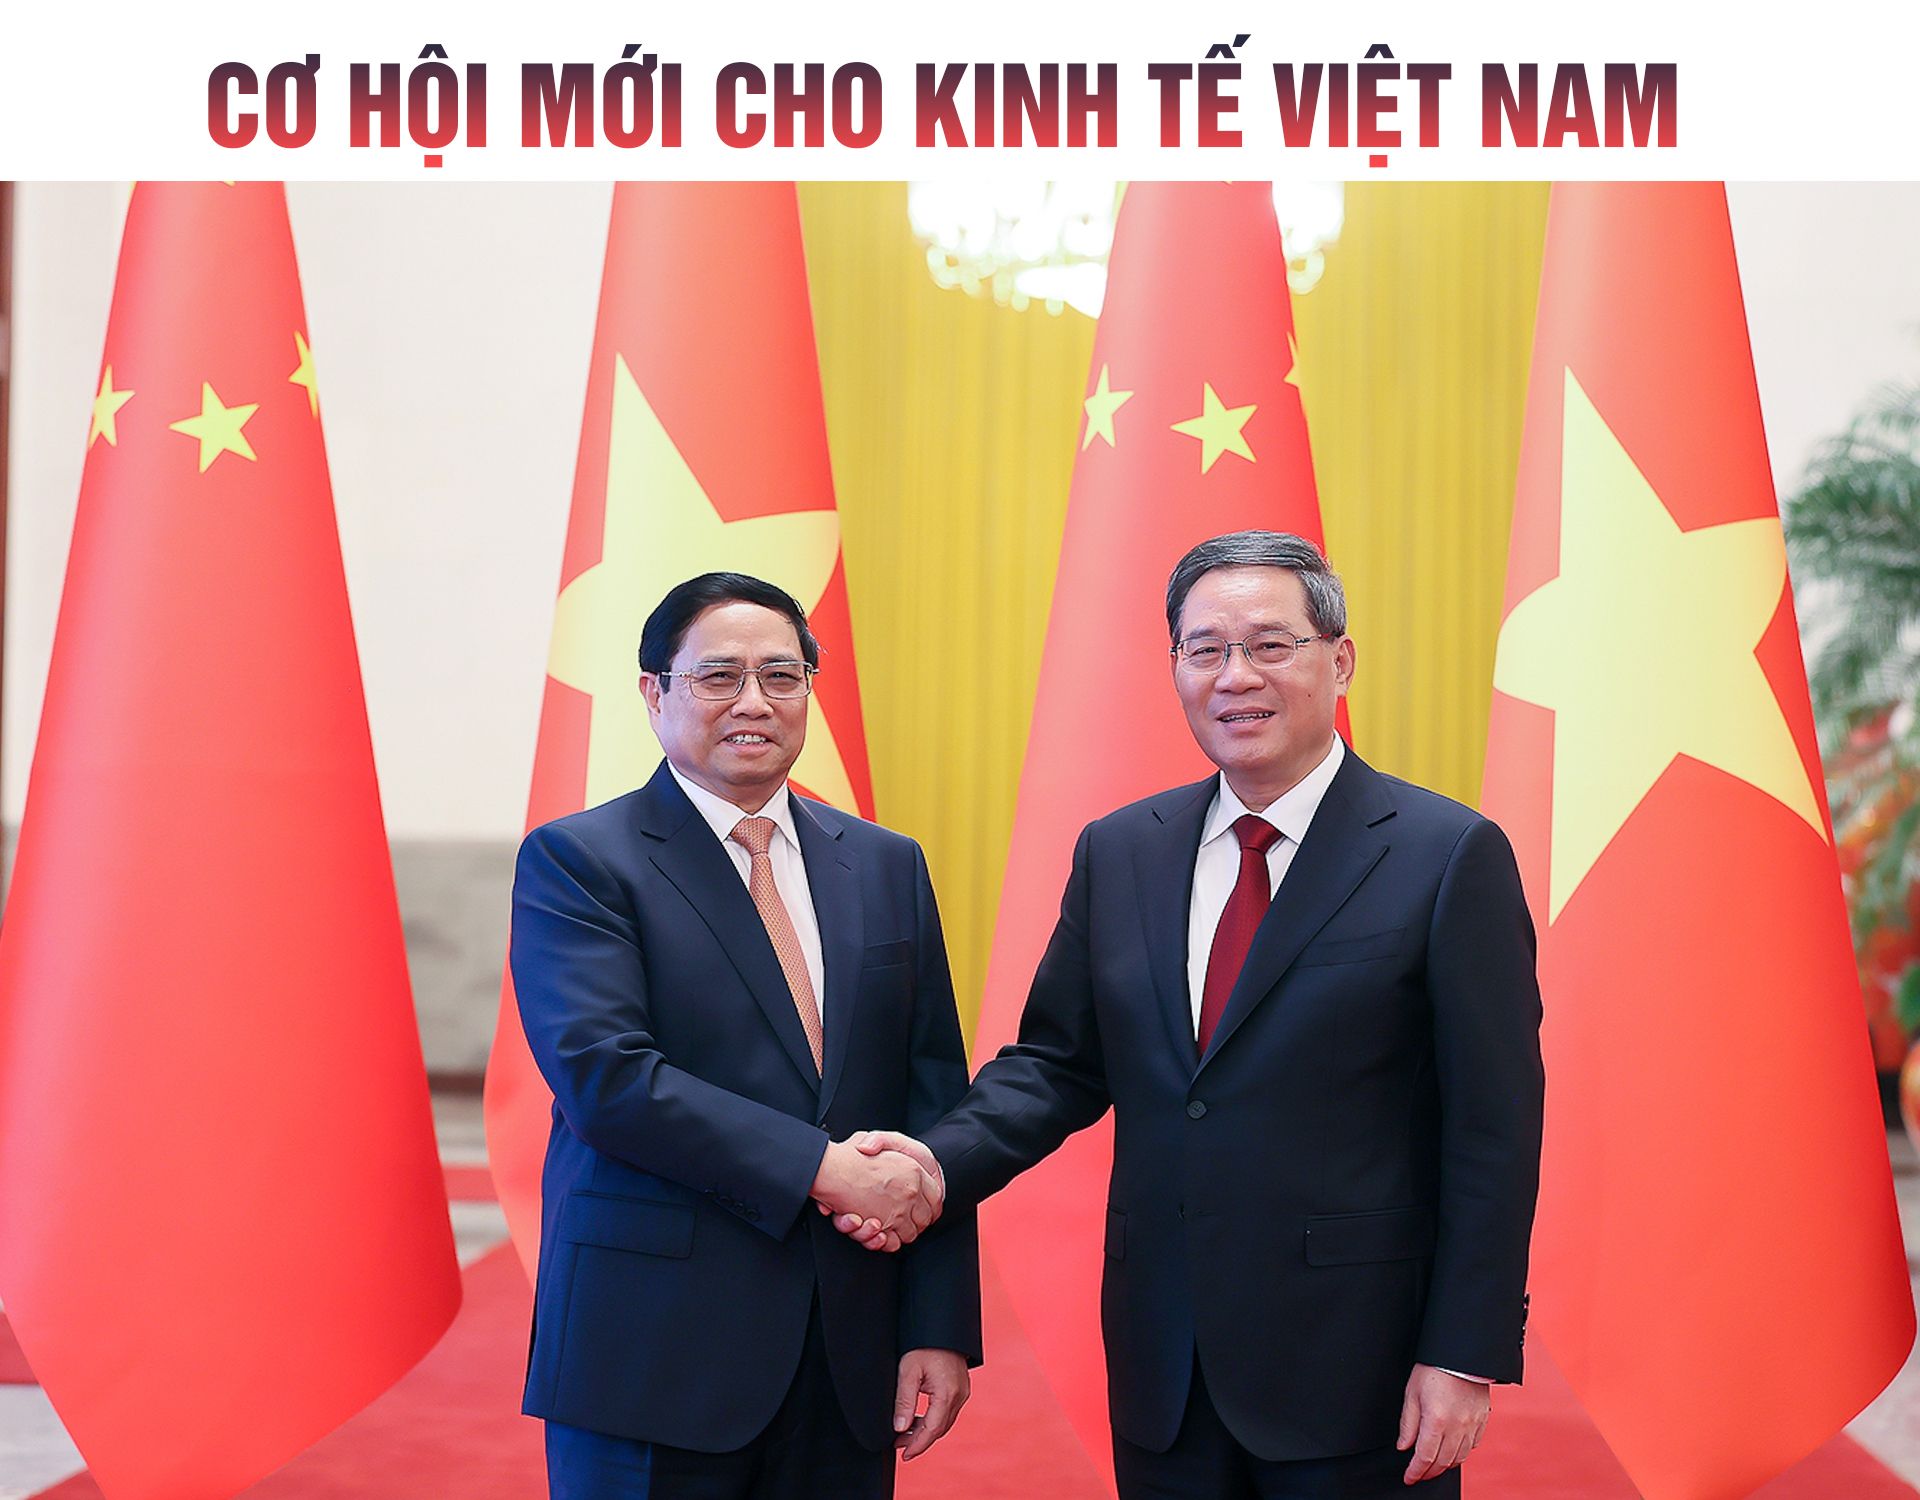 Cơ hội mới cho kinh tế Việt Nam